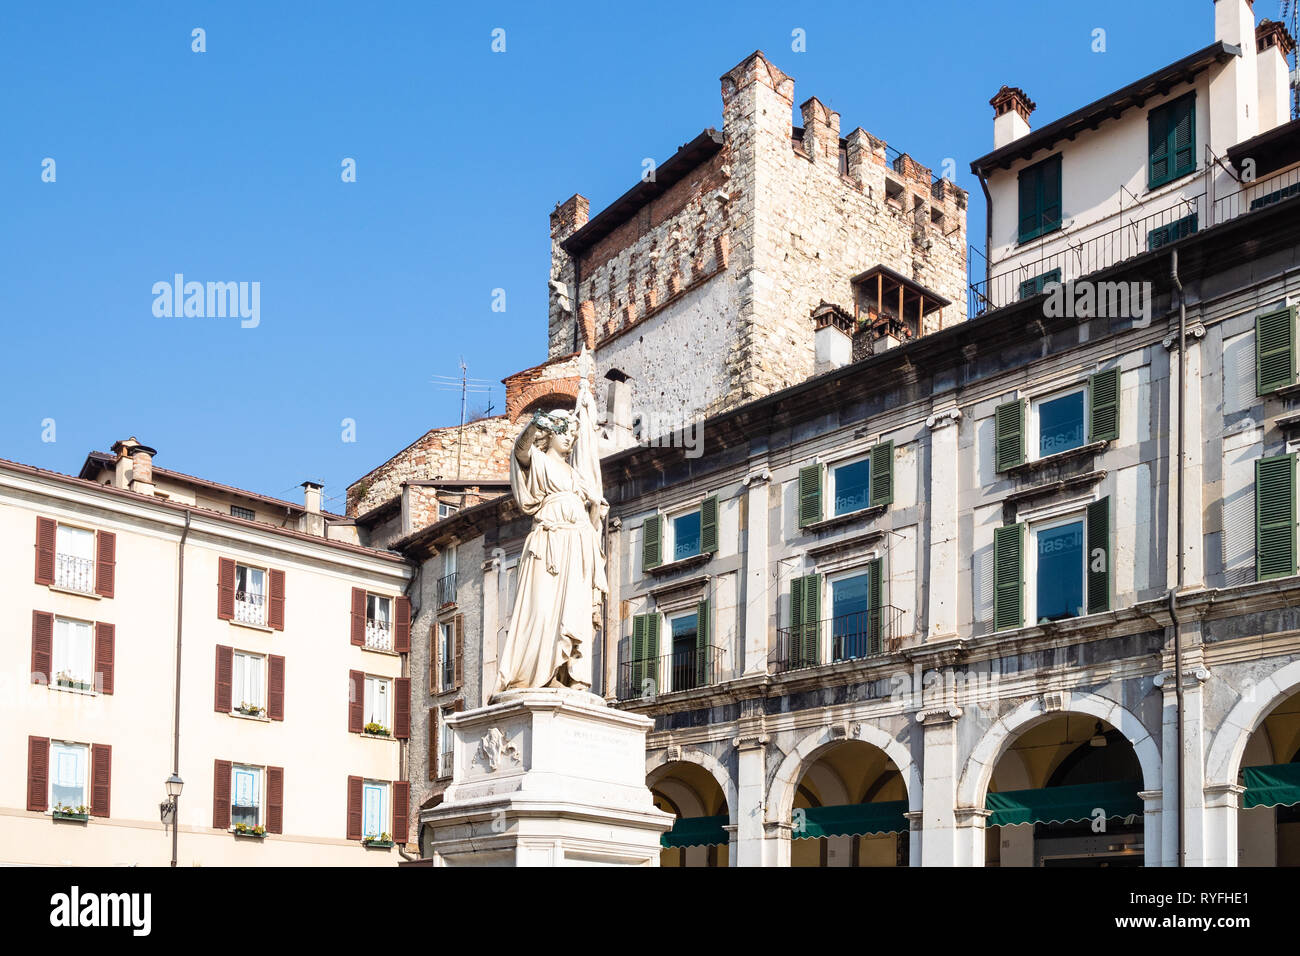 BRESCIA, ITALY - FEBRUARY 21, 2019: statue Bell'Italia on Piazza della Loggia in Brescia city. Brescia is the second largest city in Lombardy. Stock Photo